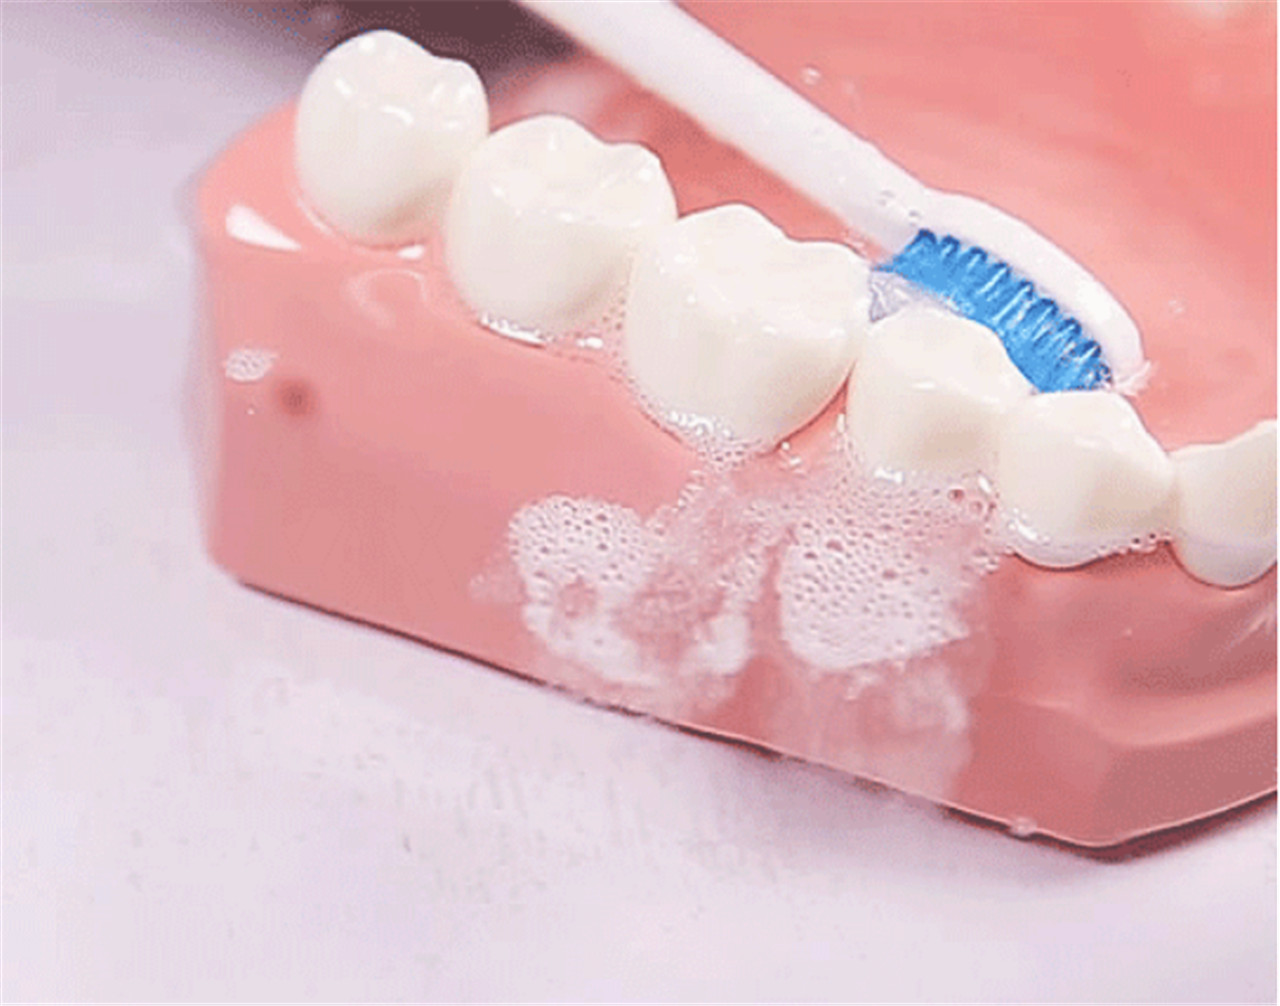 Cepillo de dentes sónico para adultos Portab eléctrico fácil de poñer no peto (8)